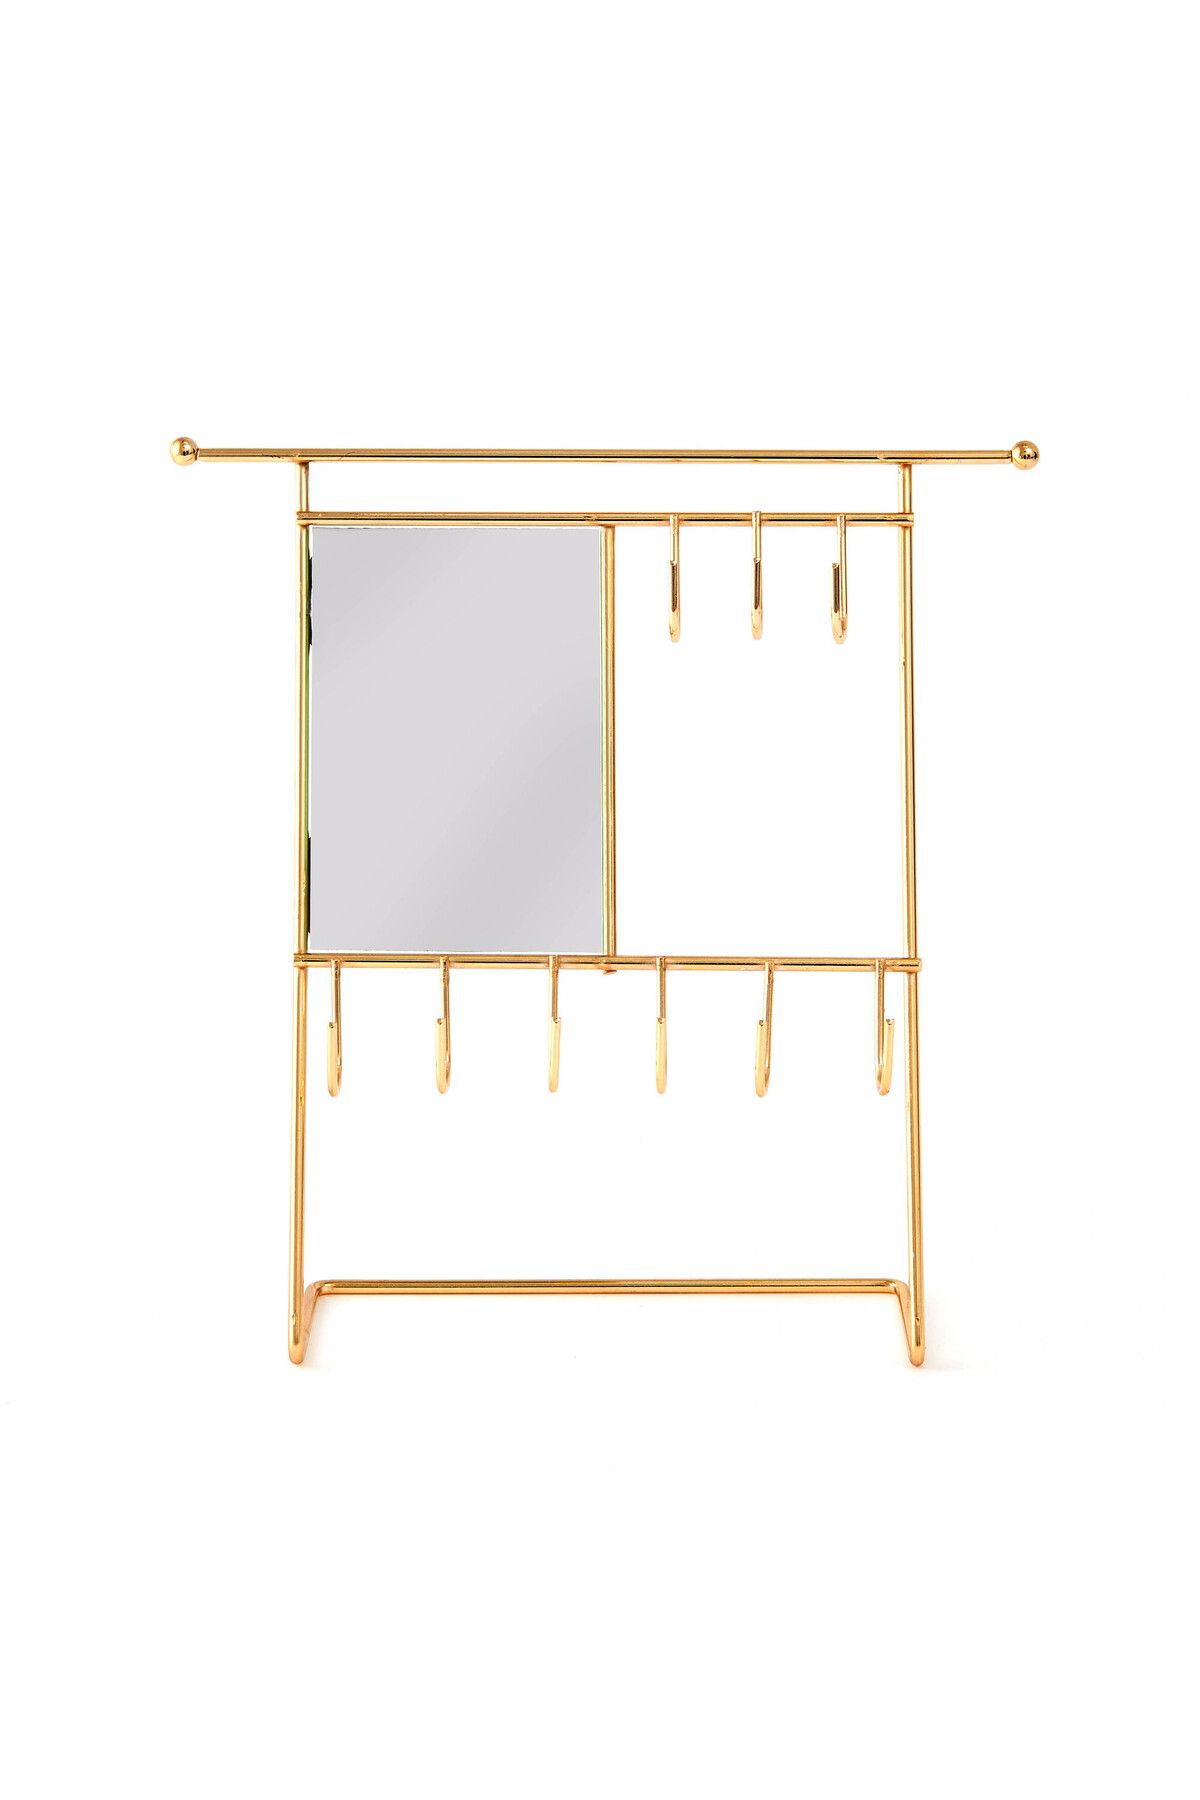 NTC METAL Dikdörtgen Aynalı Takı Askısı - Sarı - 26,5x26,5x7 cm